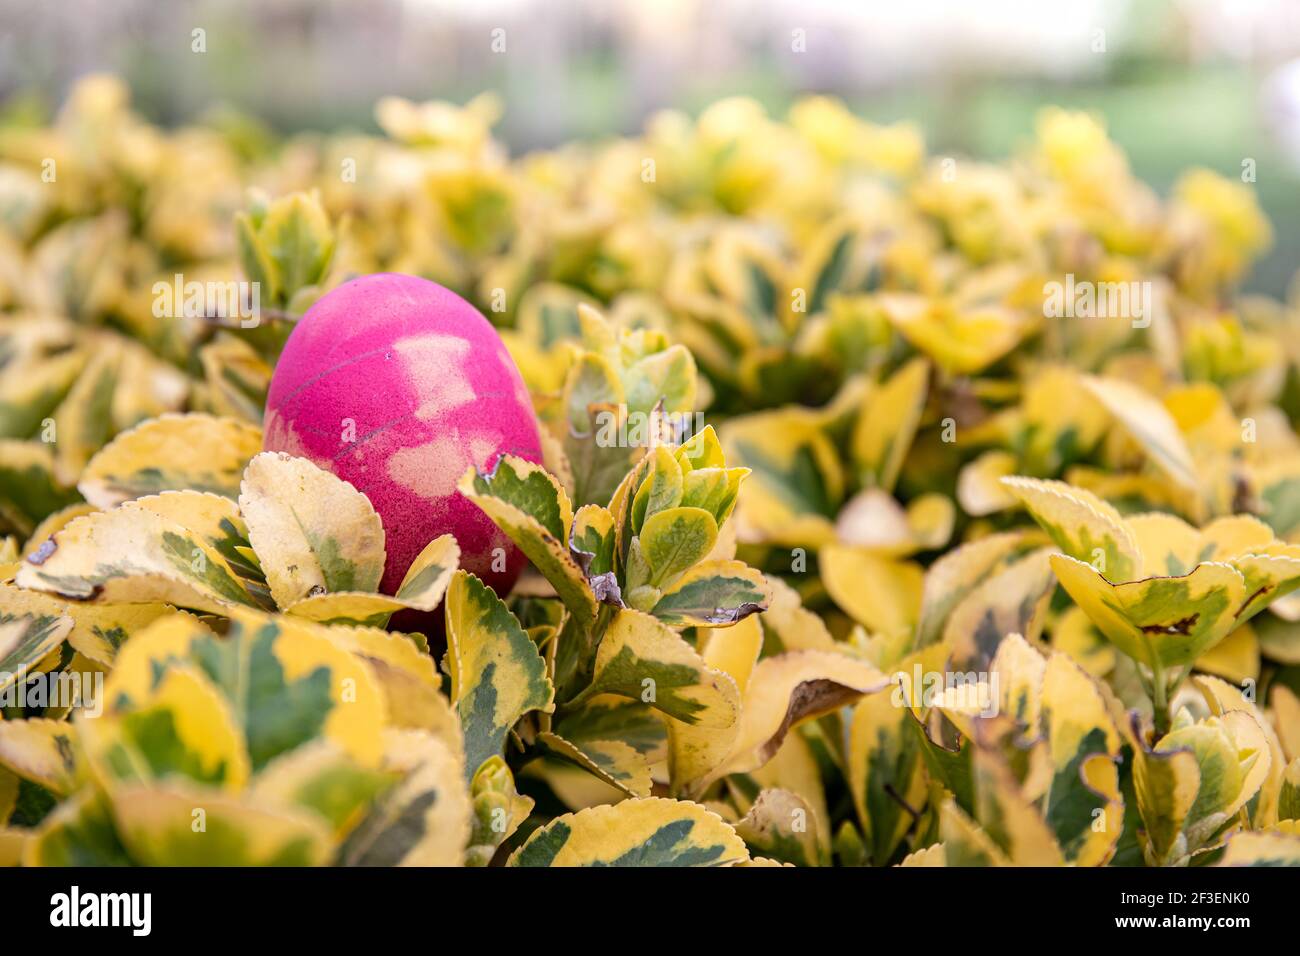 Bereit für eine Ostereiersuche? Ein rosafarbenes Ei liegt auf einem grünen und gelben Busch und wartet darauf, dass ein Kind es findet. Stockfoto